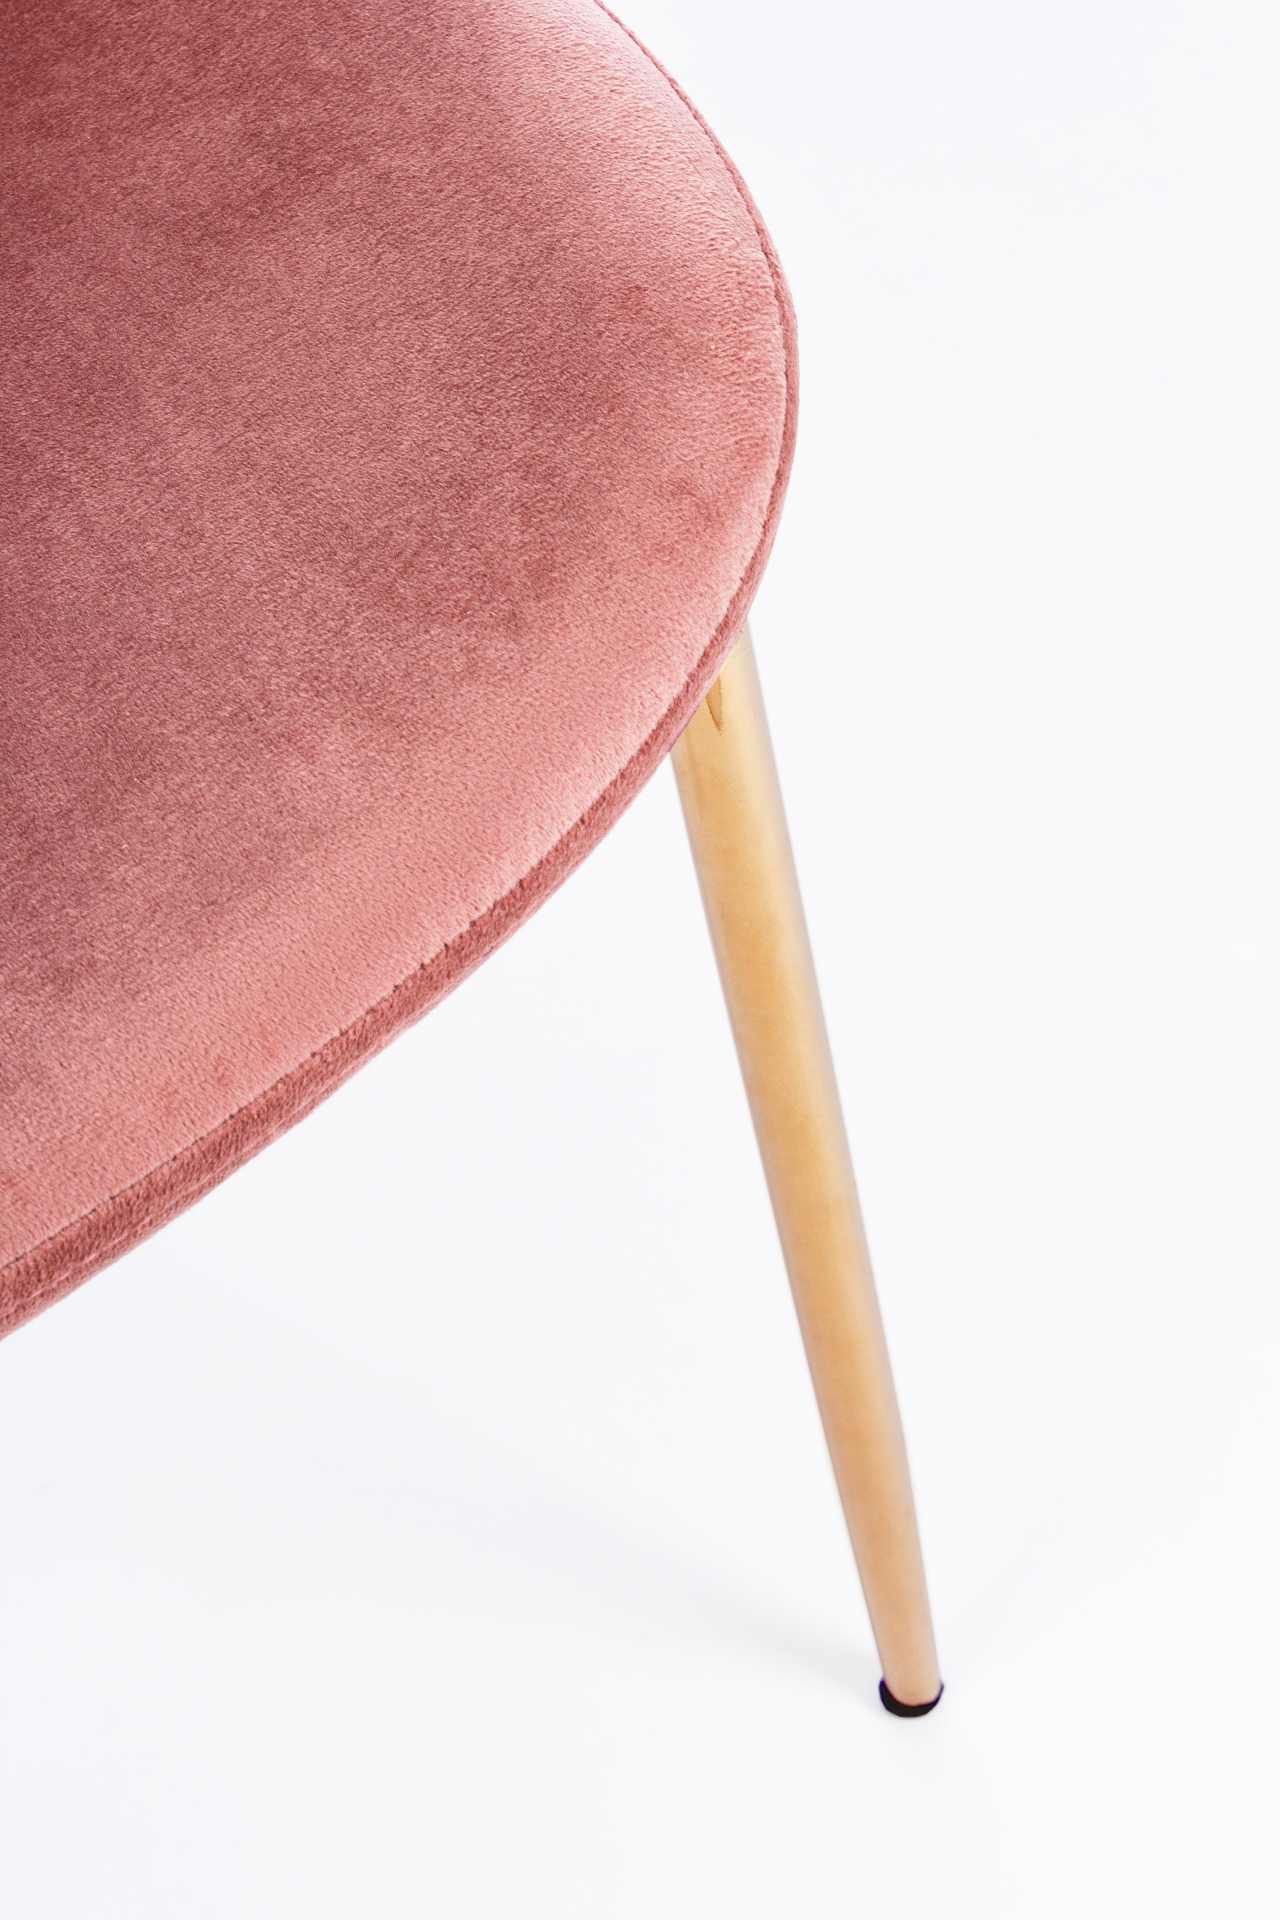 Der Esszimmerstuhl Terry überzeugt mit seinem modernem Design. Gefertigt wurde der Stuhl aus einem Samt-Bezug, welcher einen Rosa Farbton besitzt. Das Gestell ist aus Metall und ist Gold. Die Sitzhöhe beträgt 47 cm.